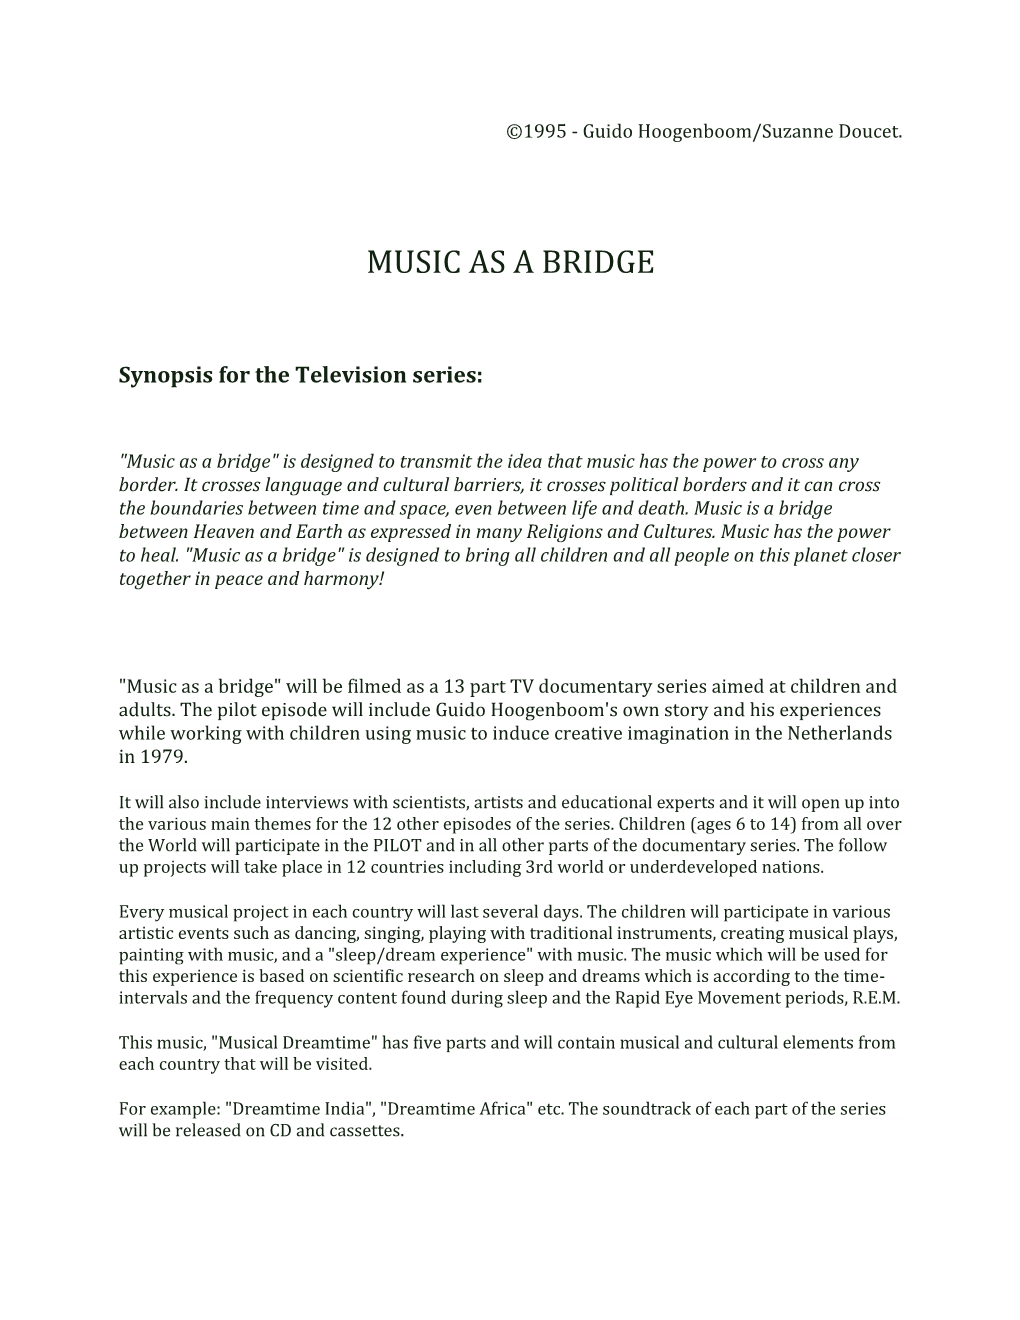 Music As a Bridge